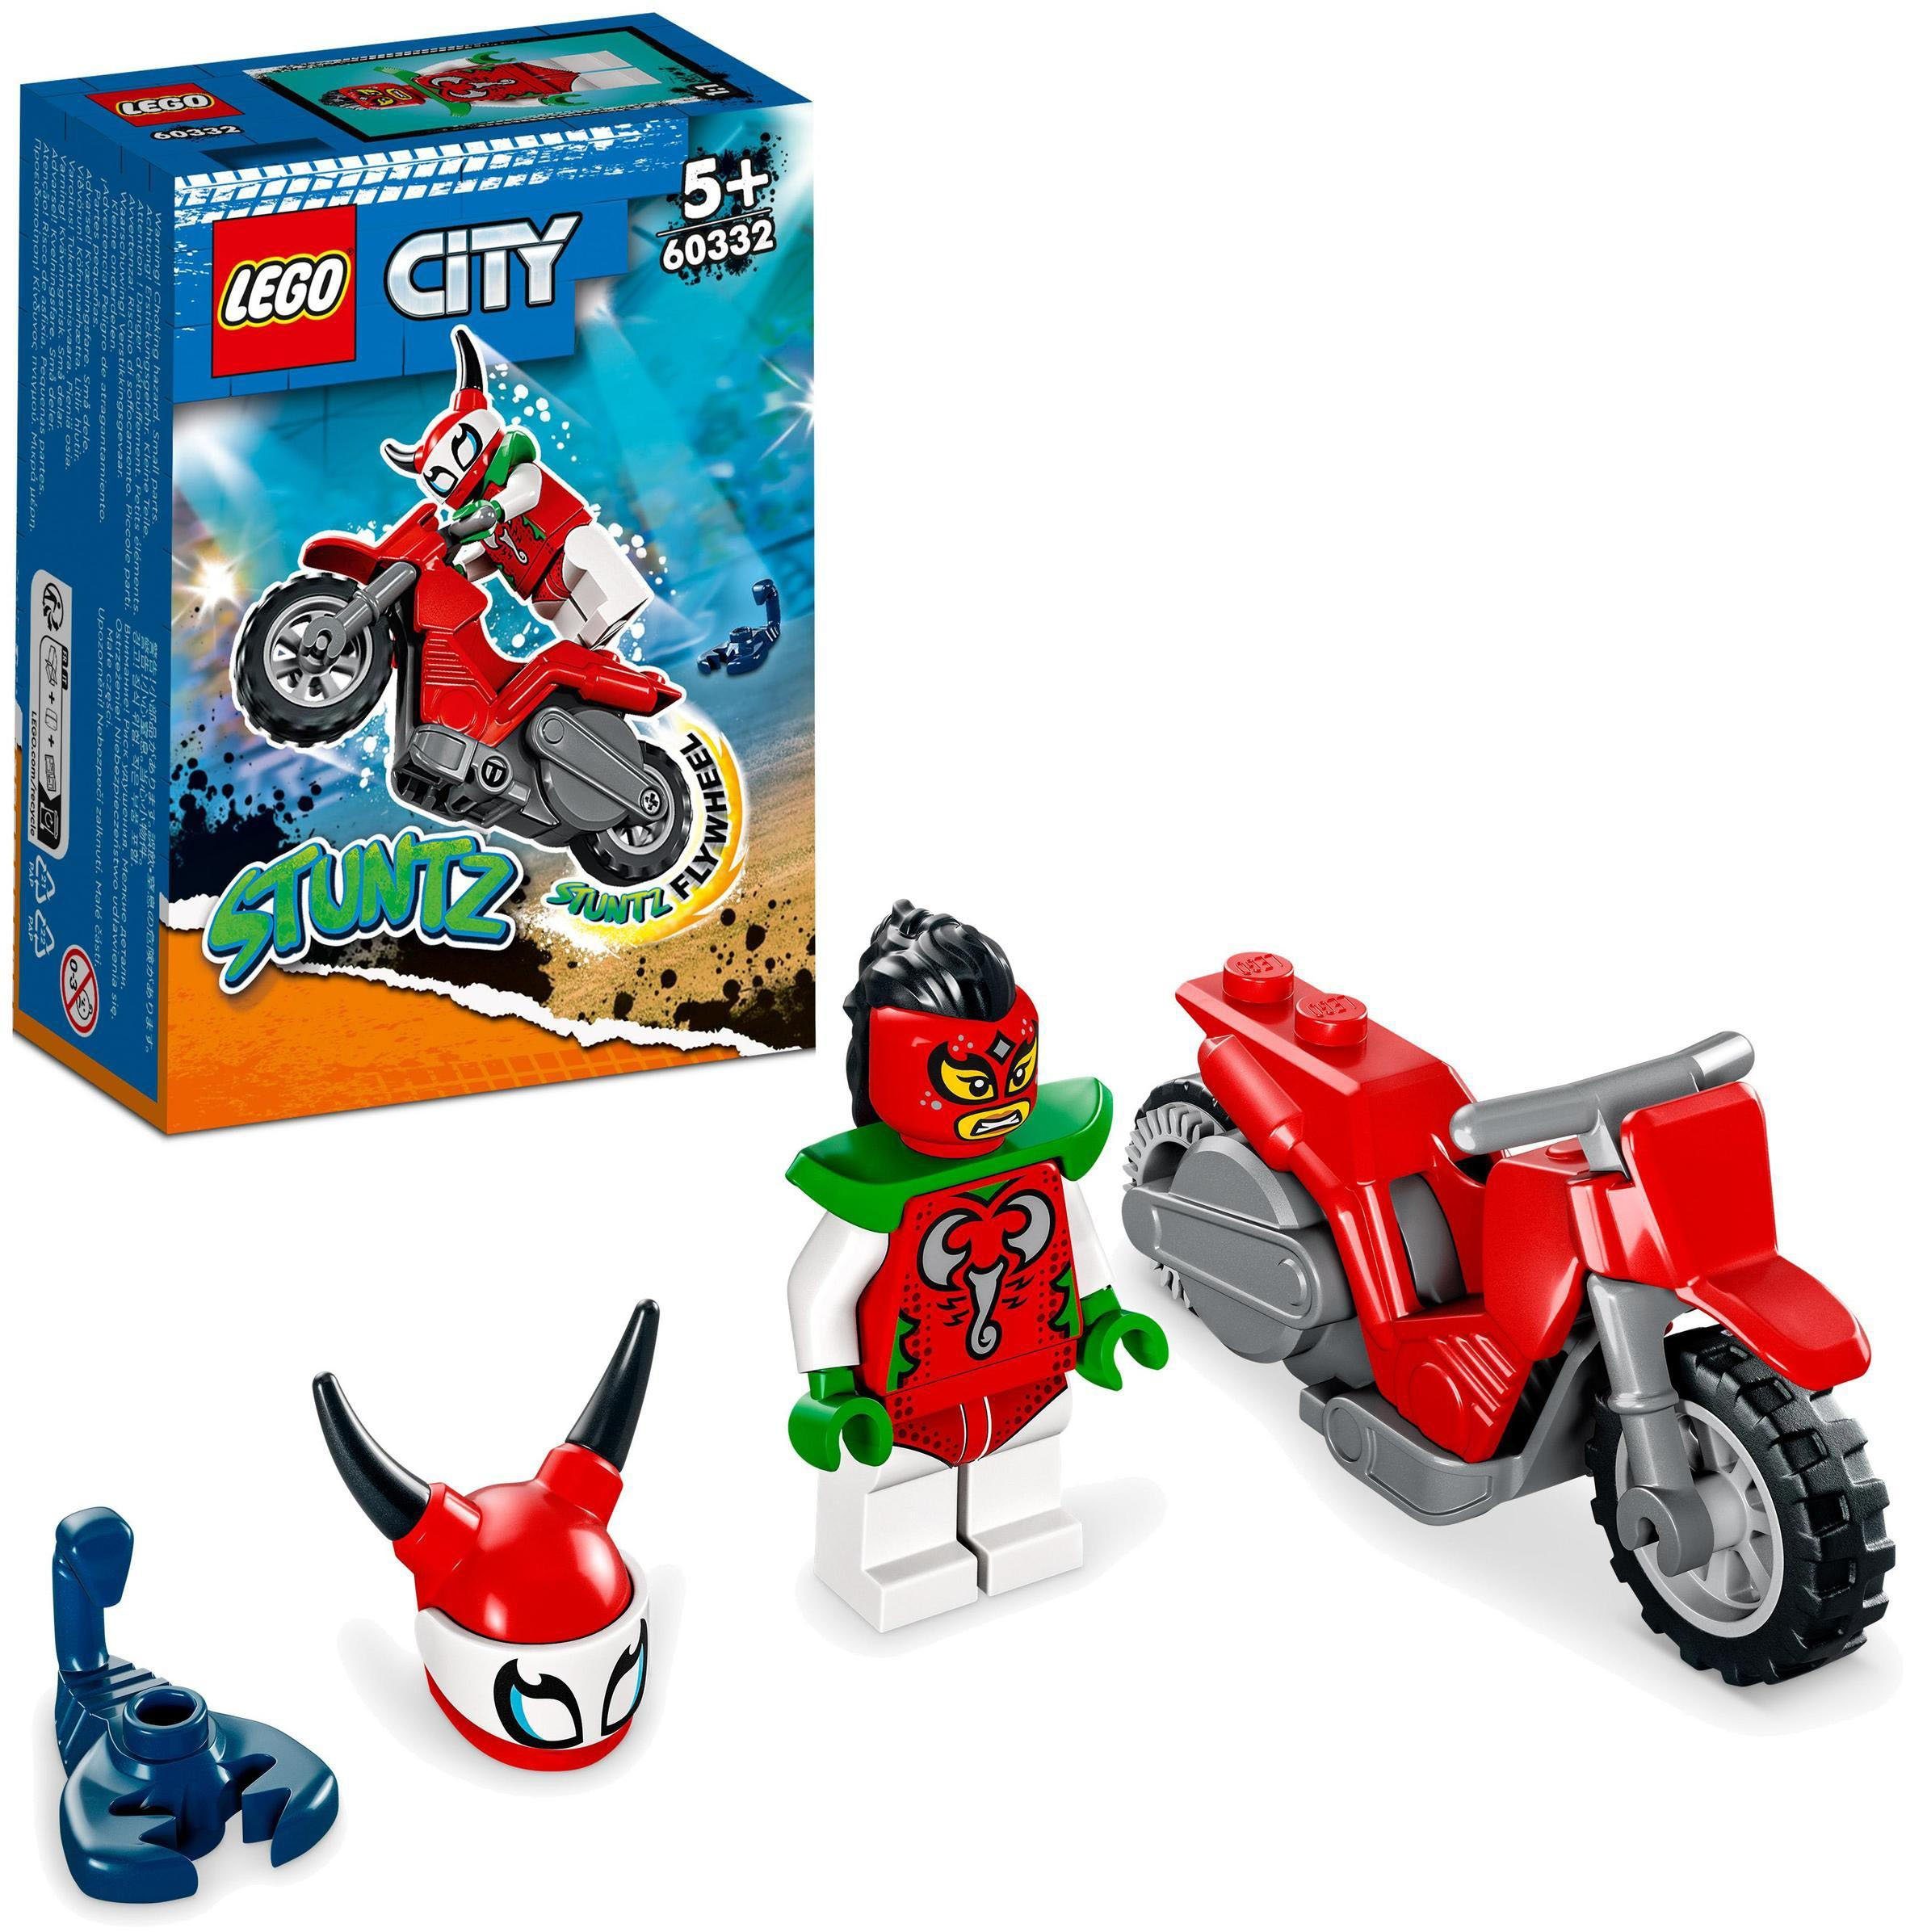 Stuntz, (60332), City LEGO® Skorpion-Stuntbike Europe (15 Konstruktionsspielsteine St), Made in LEGO®